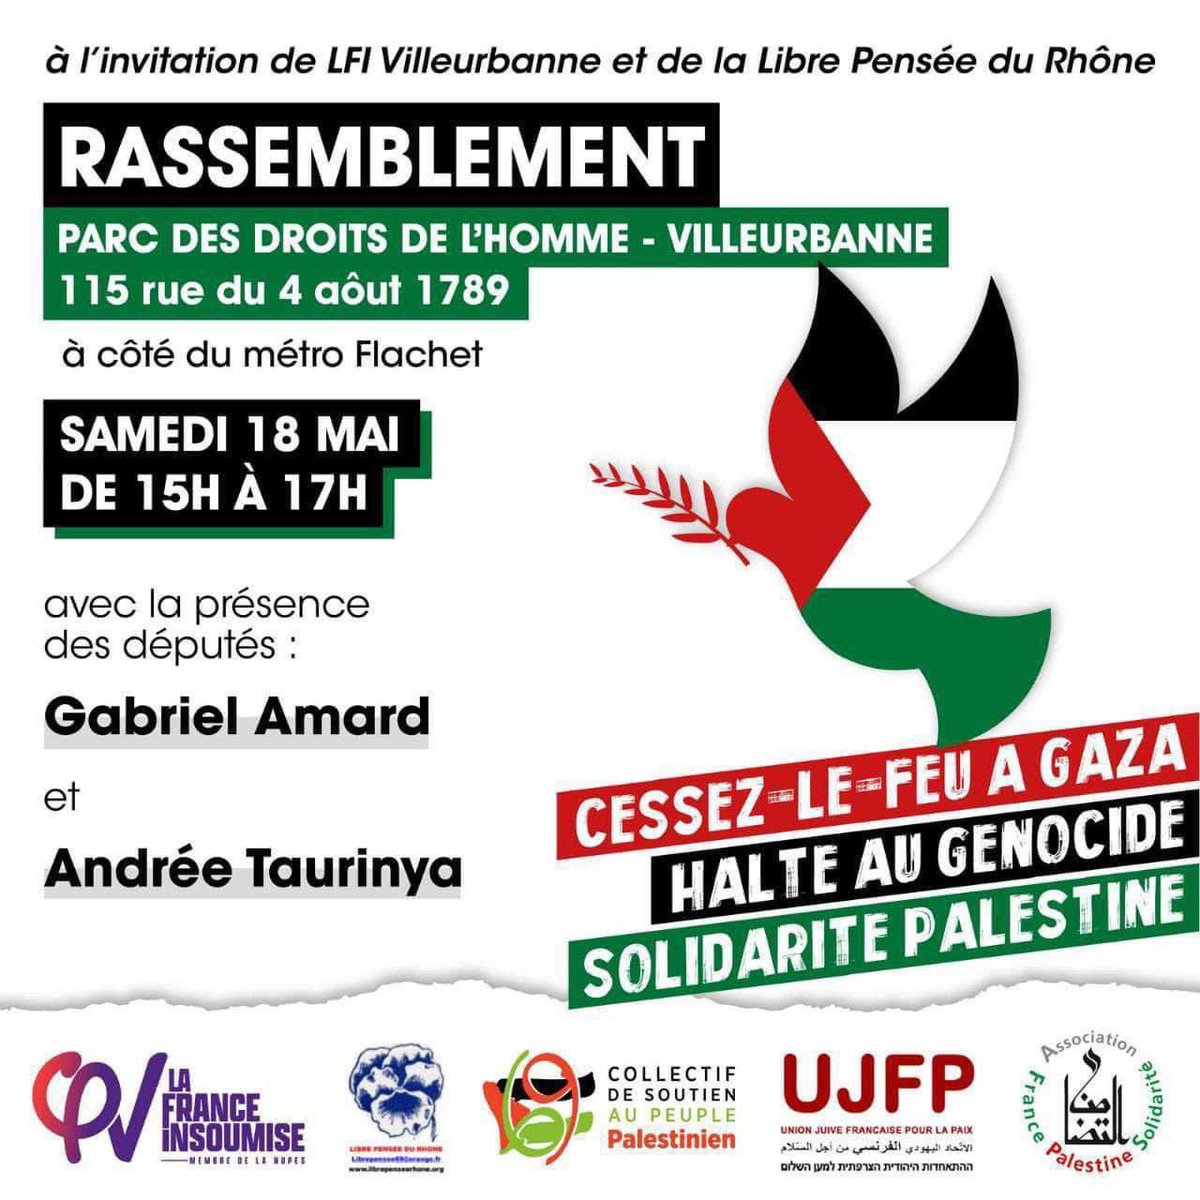 🔴 Rappel : 📌 Demain à partir de 15h Je serai avec @AndreeTaurinya députée LFI au rassemblement pour la Paix et en soutien au peuple palestinien 🇵🇸 📍Parc des droits de l'homme - Villeurbanne - 115 rue du 4 août 1789 (métro Flachet)